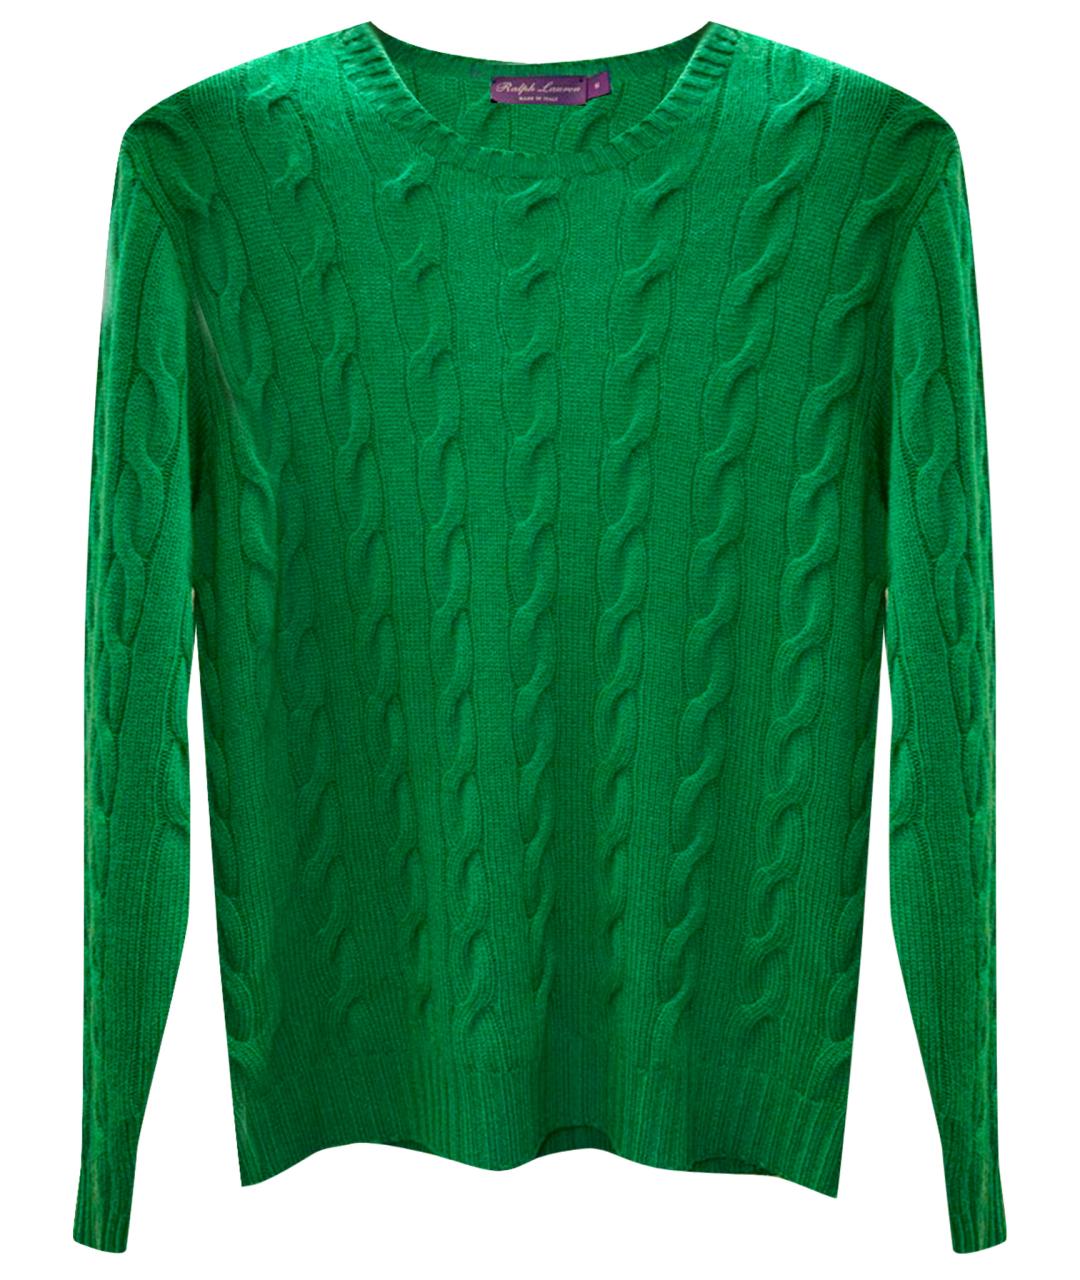 RALPH LAUREN Зеленый шерстяной джемпер / свитер, фото 1